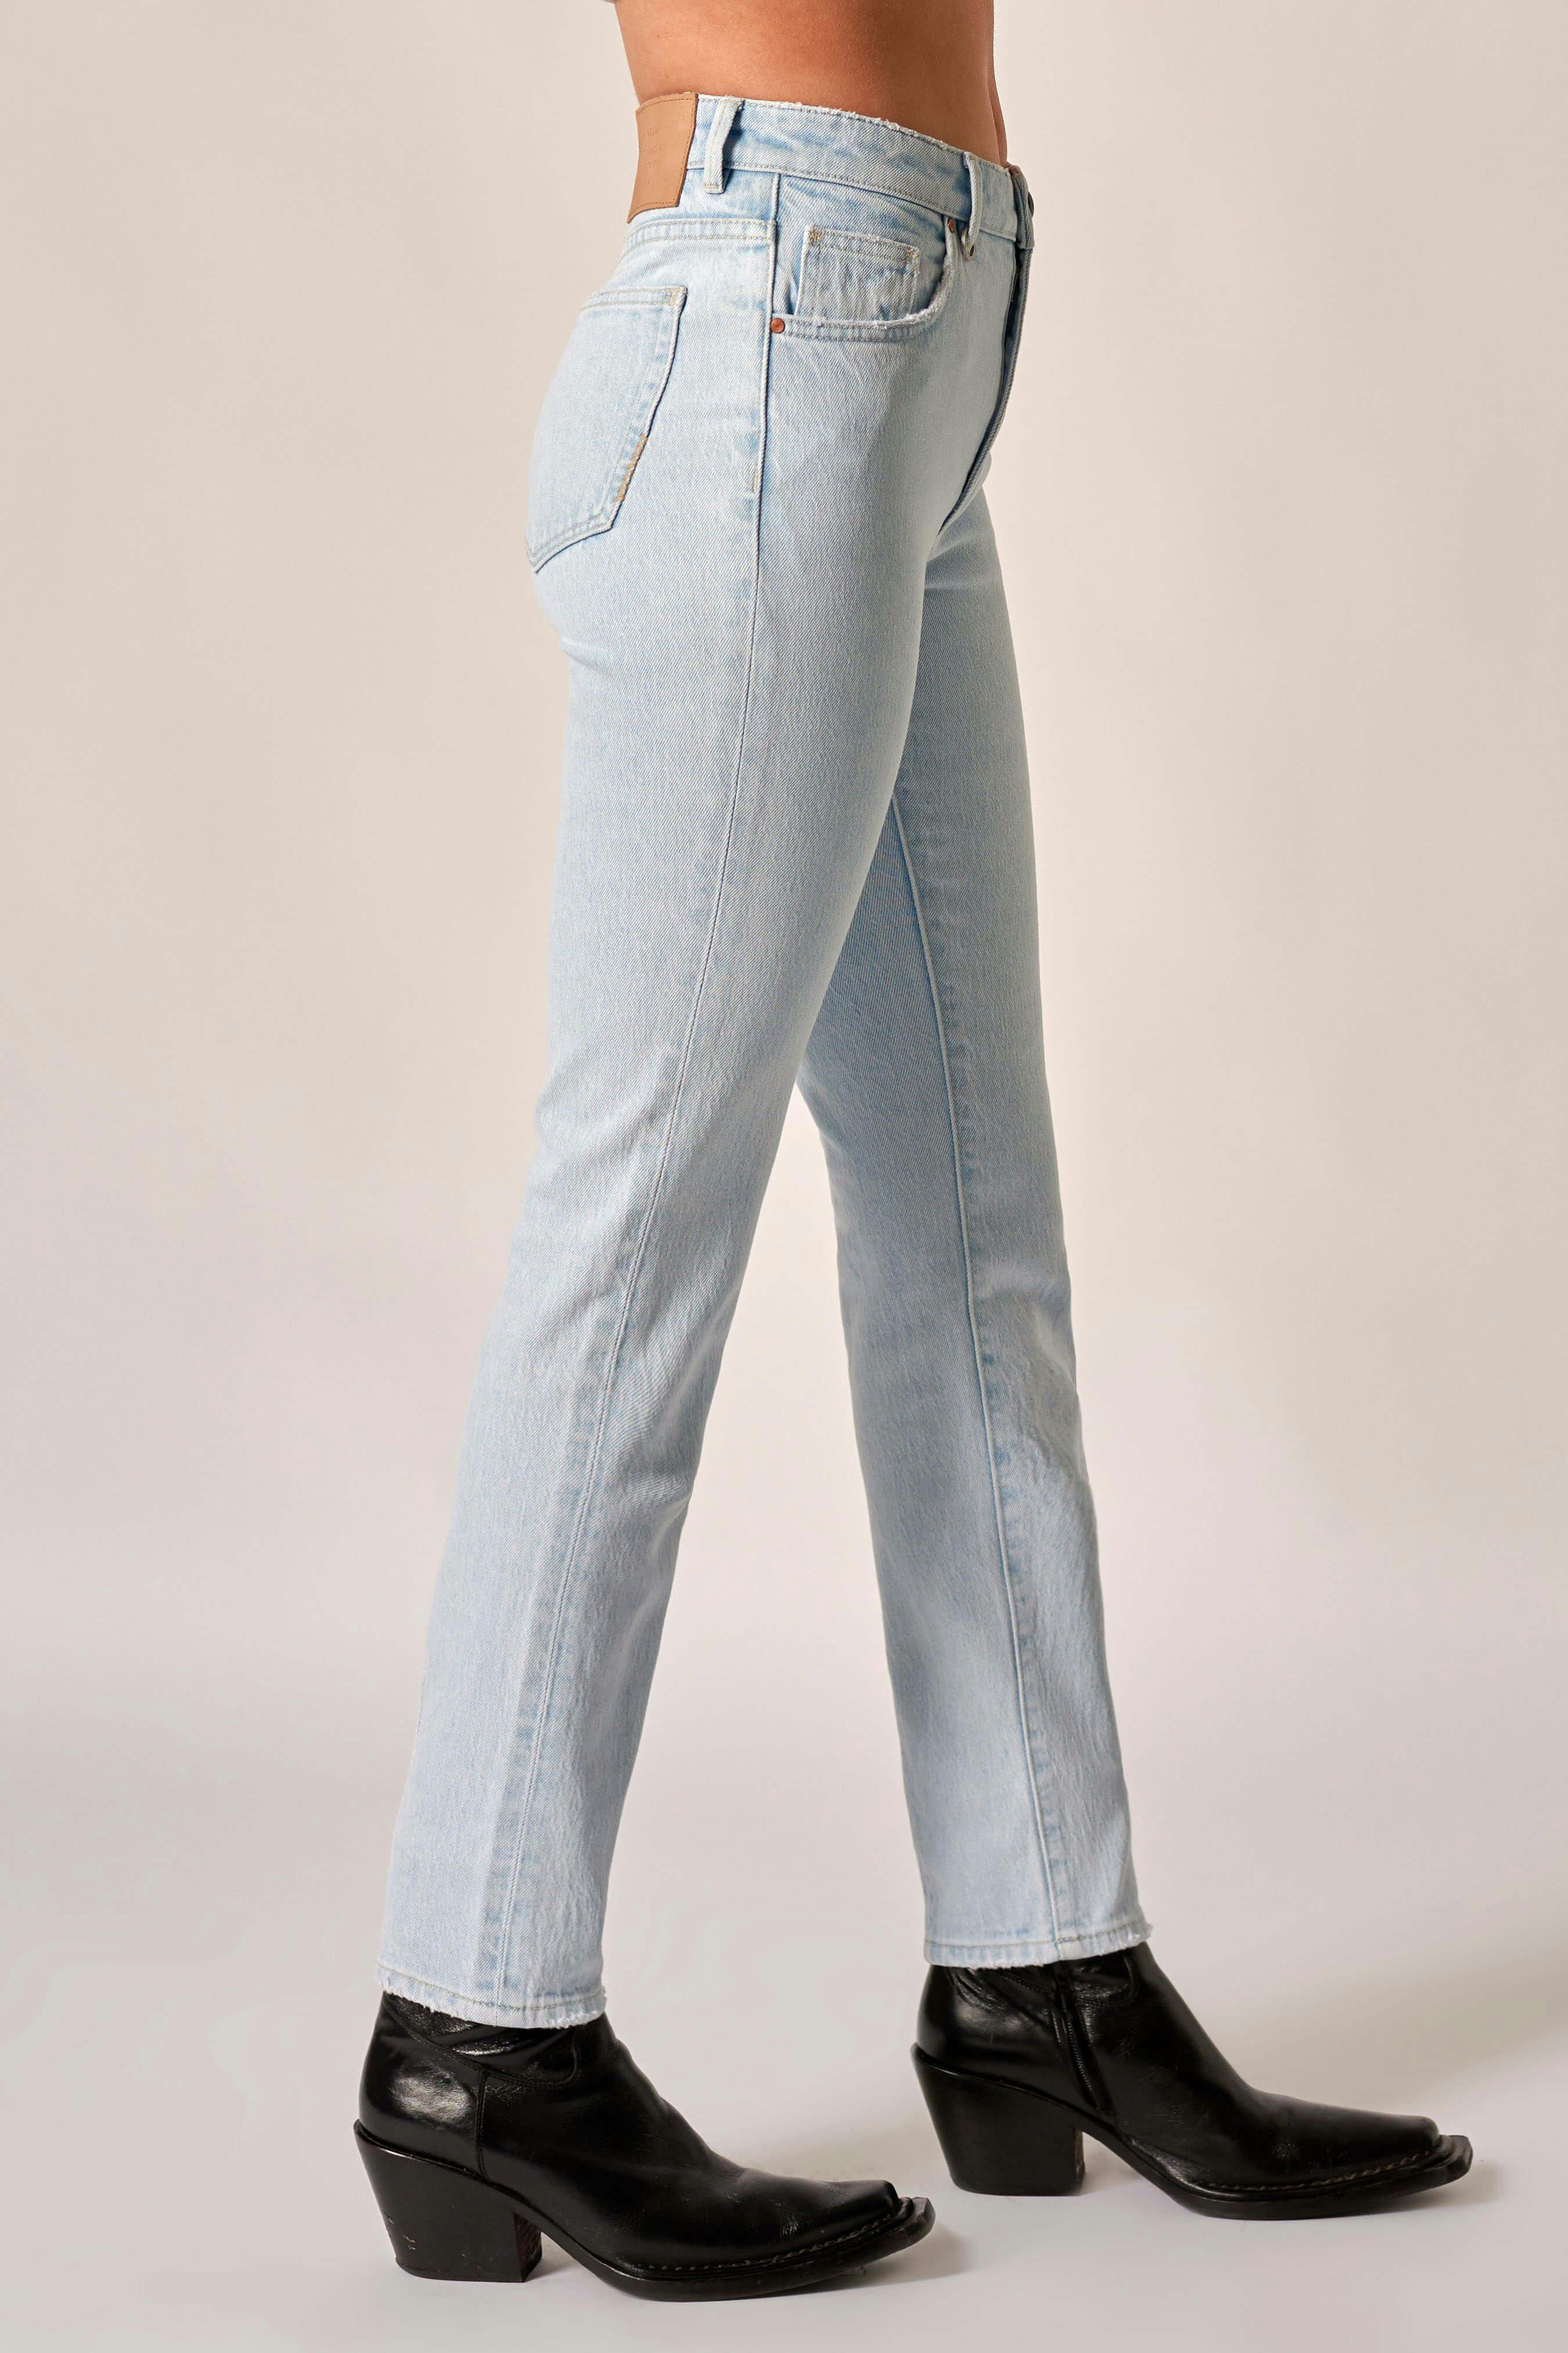 Lexi Straight - Ozone Neuw light grey womens-jeans 